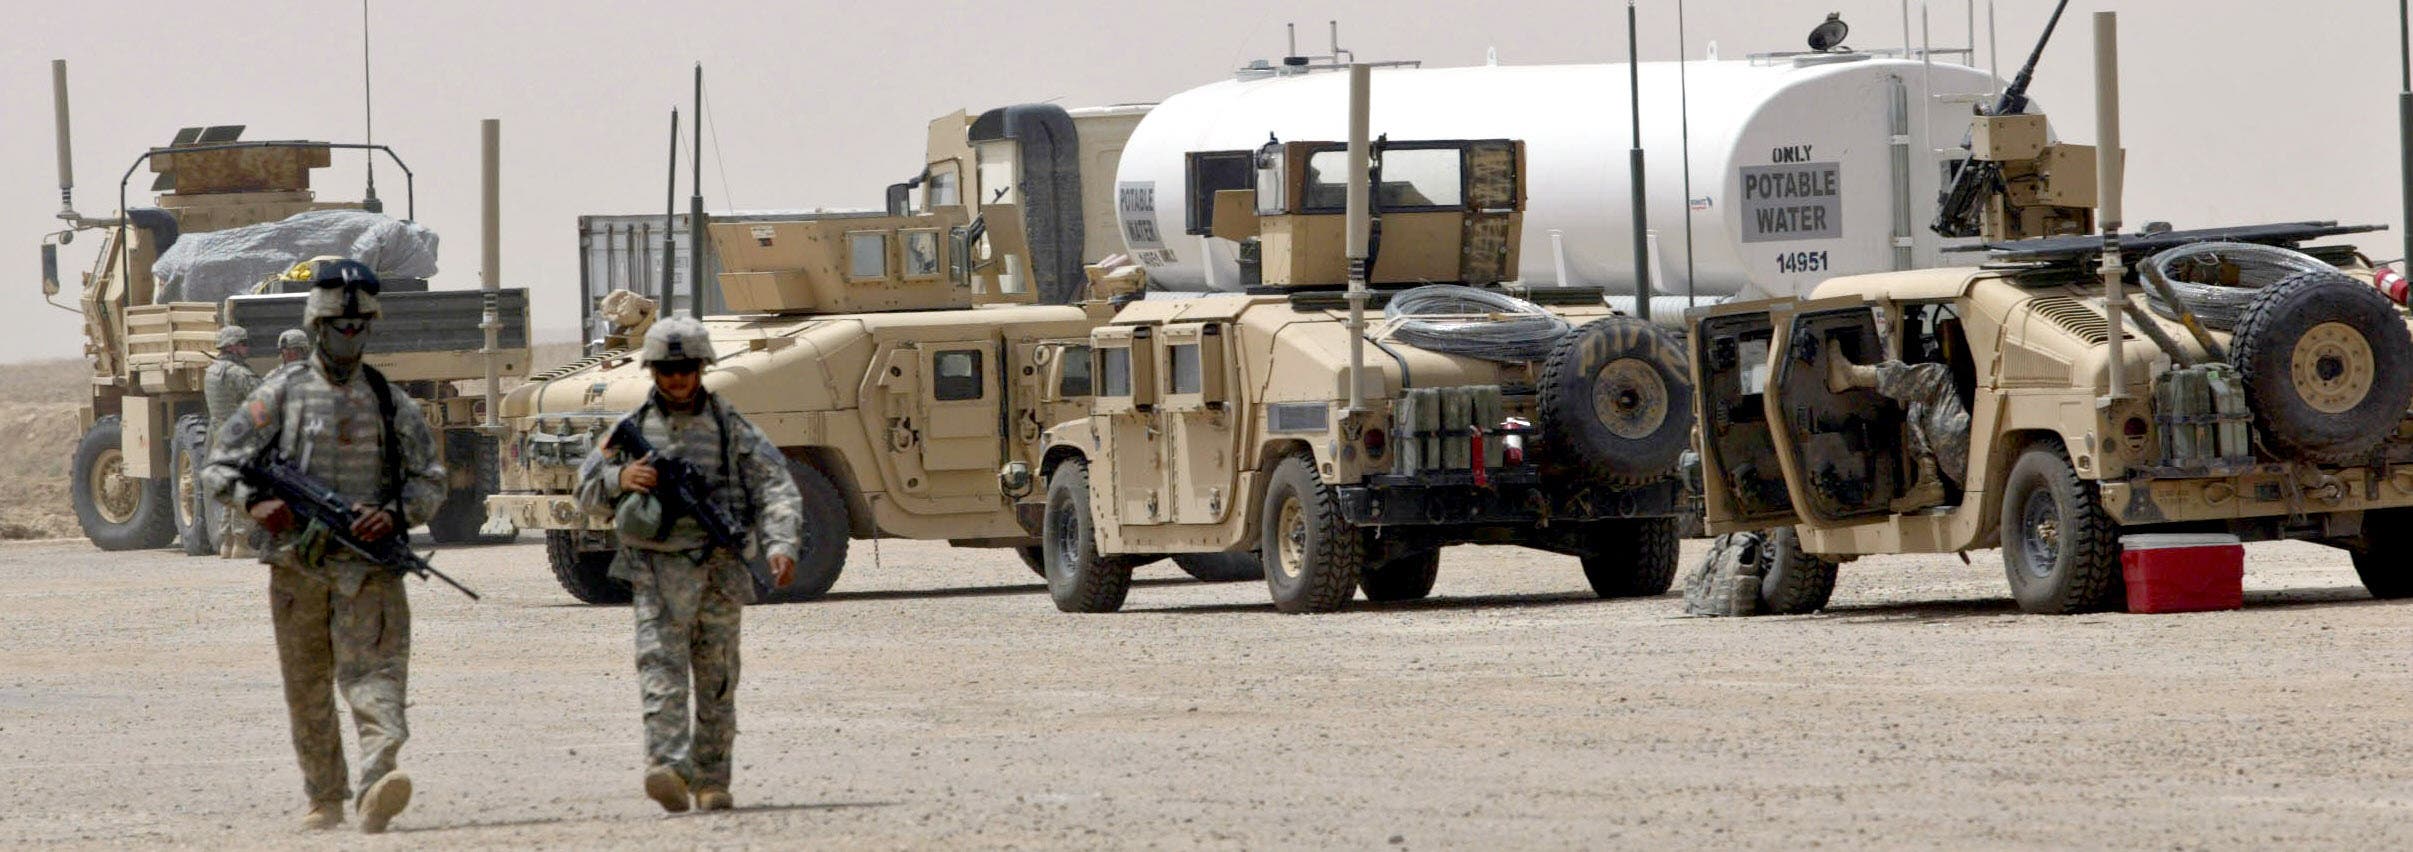 قوات أميركية في العراق "أرشيفية"